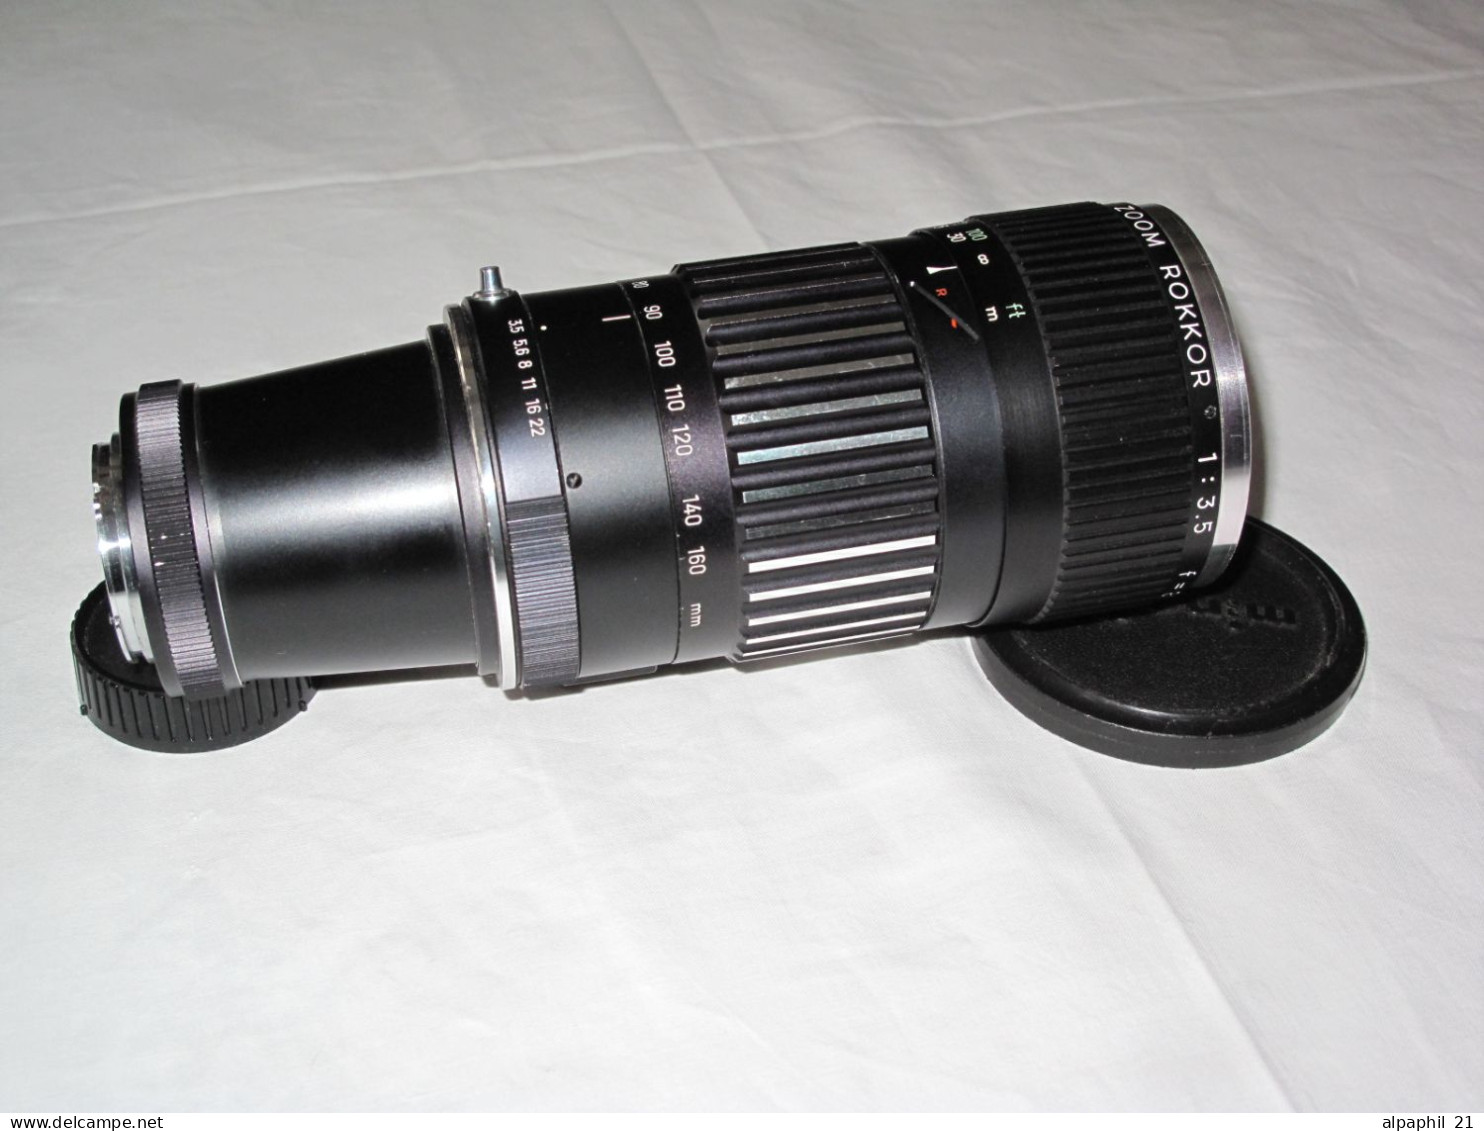 Minolta Rokkor Zoom Lens F3.5, 80-160 mm